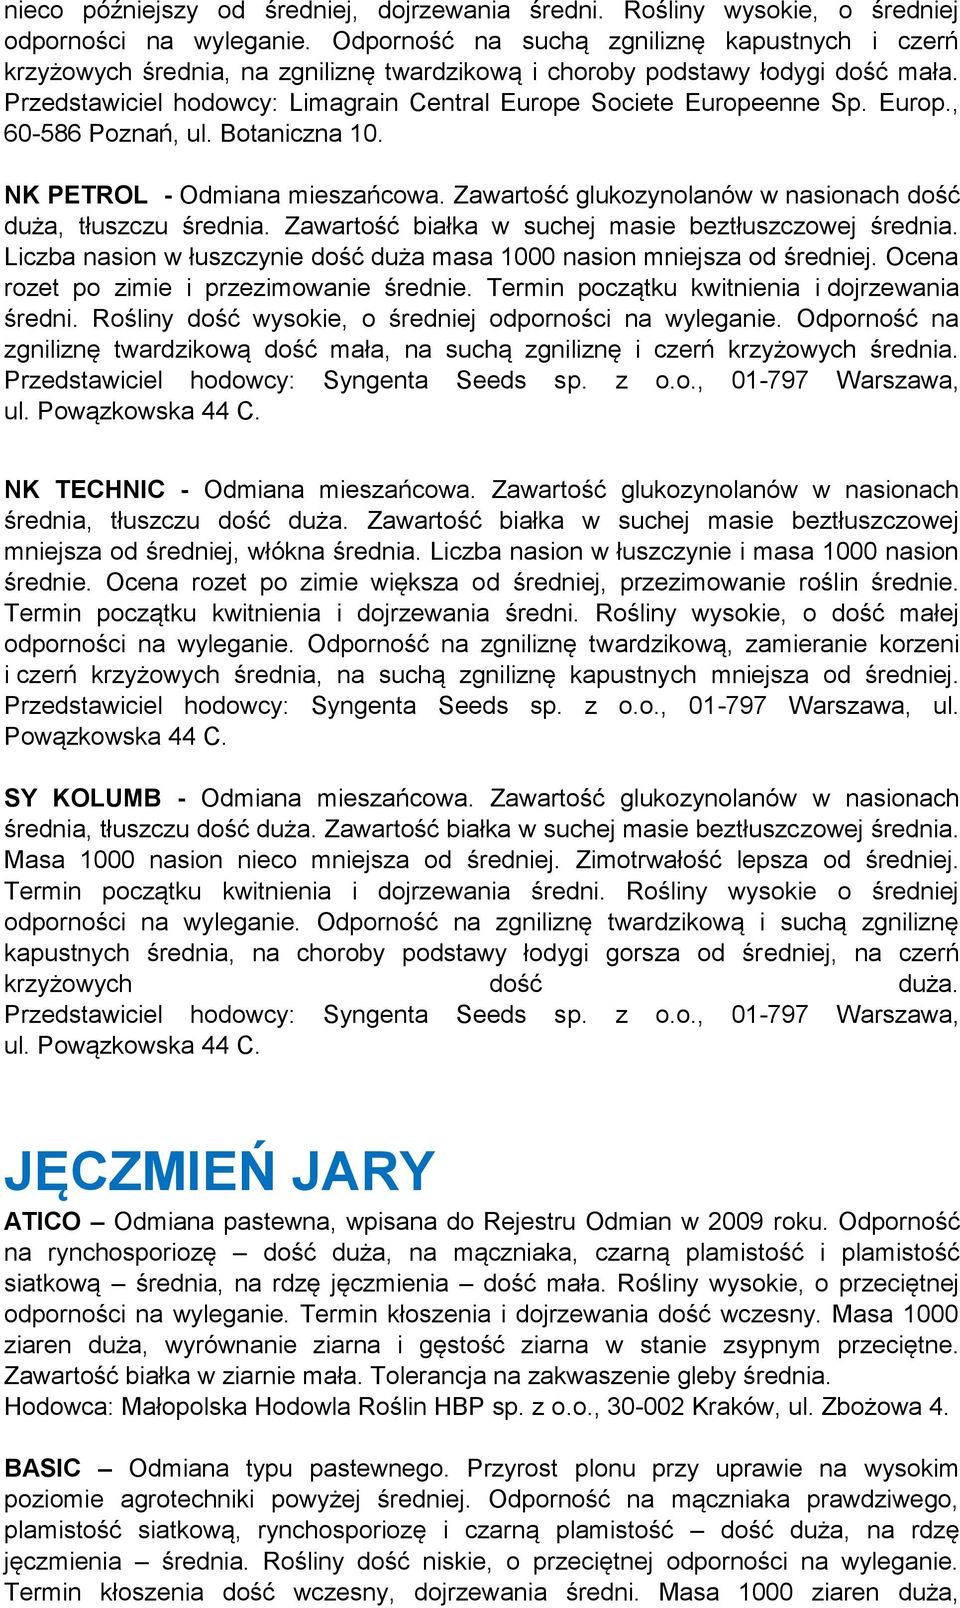 Przedstawiciel hodowcy: Limagrain Central Europe Societe Europeenne Sp. Europ., 60-586 Poznań, ul. Botaniczna 10. NK PETROL - Odmiana mieszańcowa.